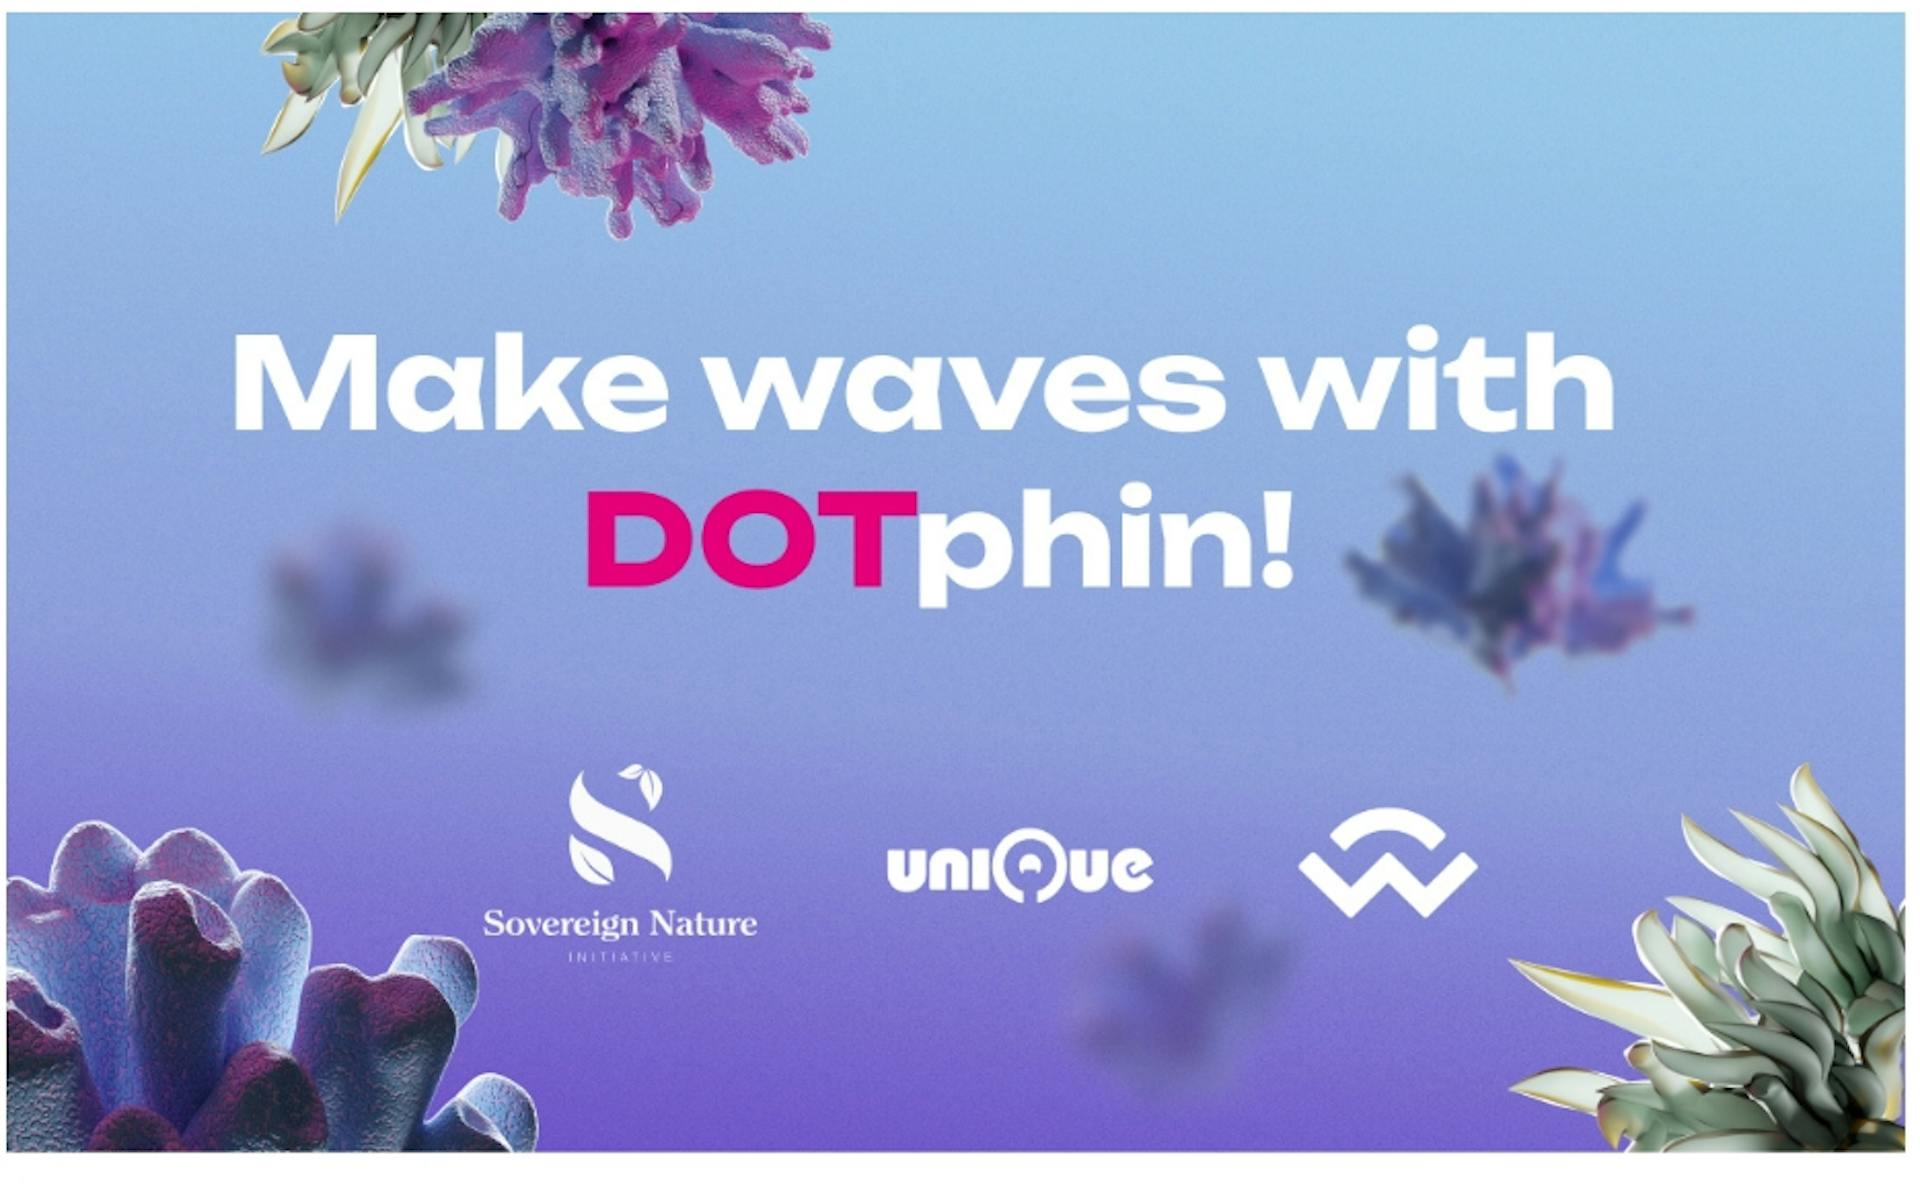 featured image - Sovereign Nature Initiative führt DOTphin auf Polkadot ein, um positive Auswirkungen auf die Umwelt zu erzielen